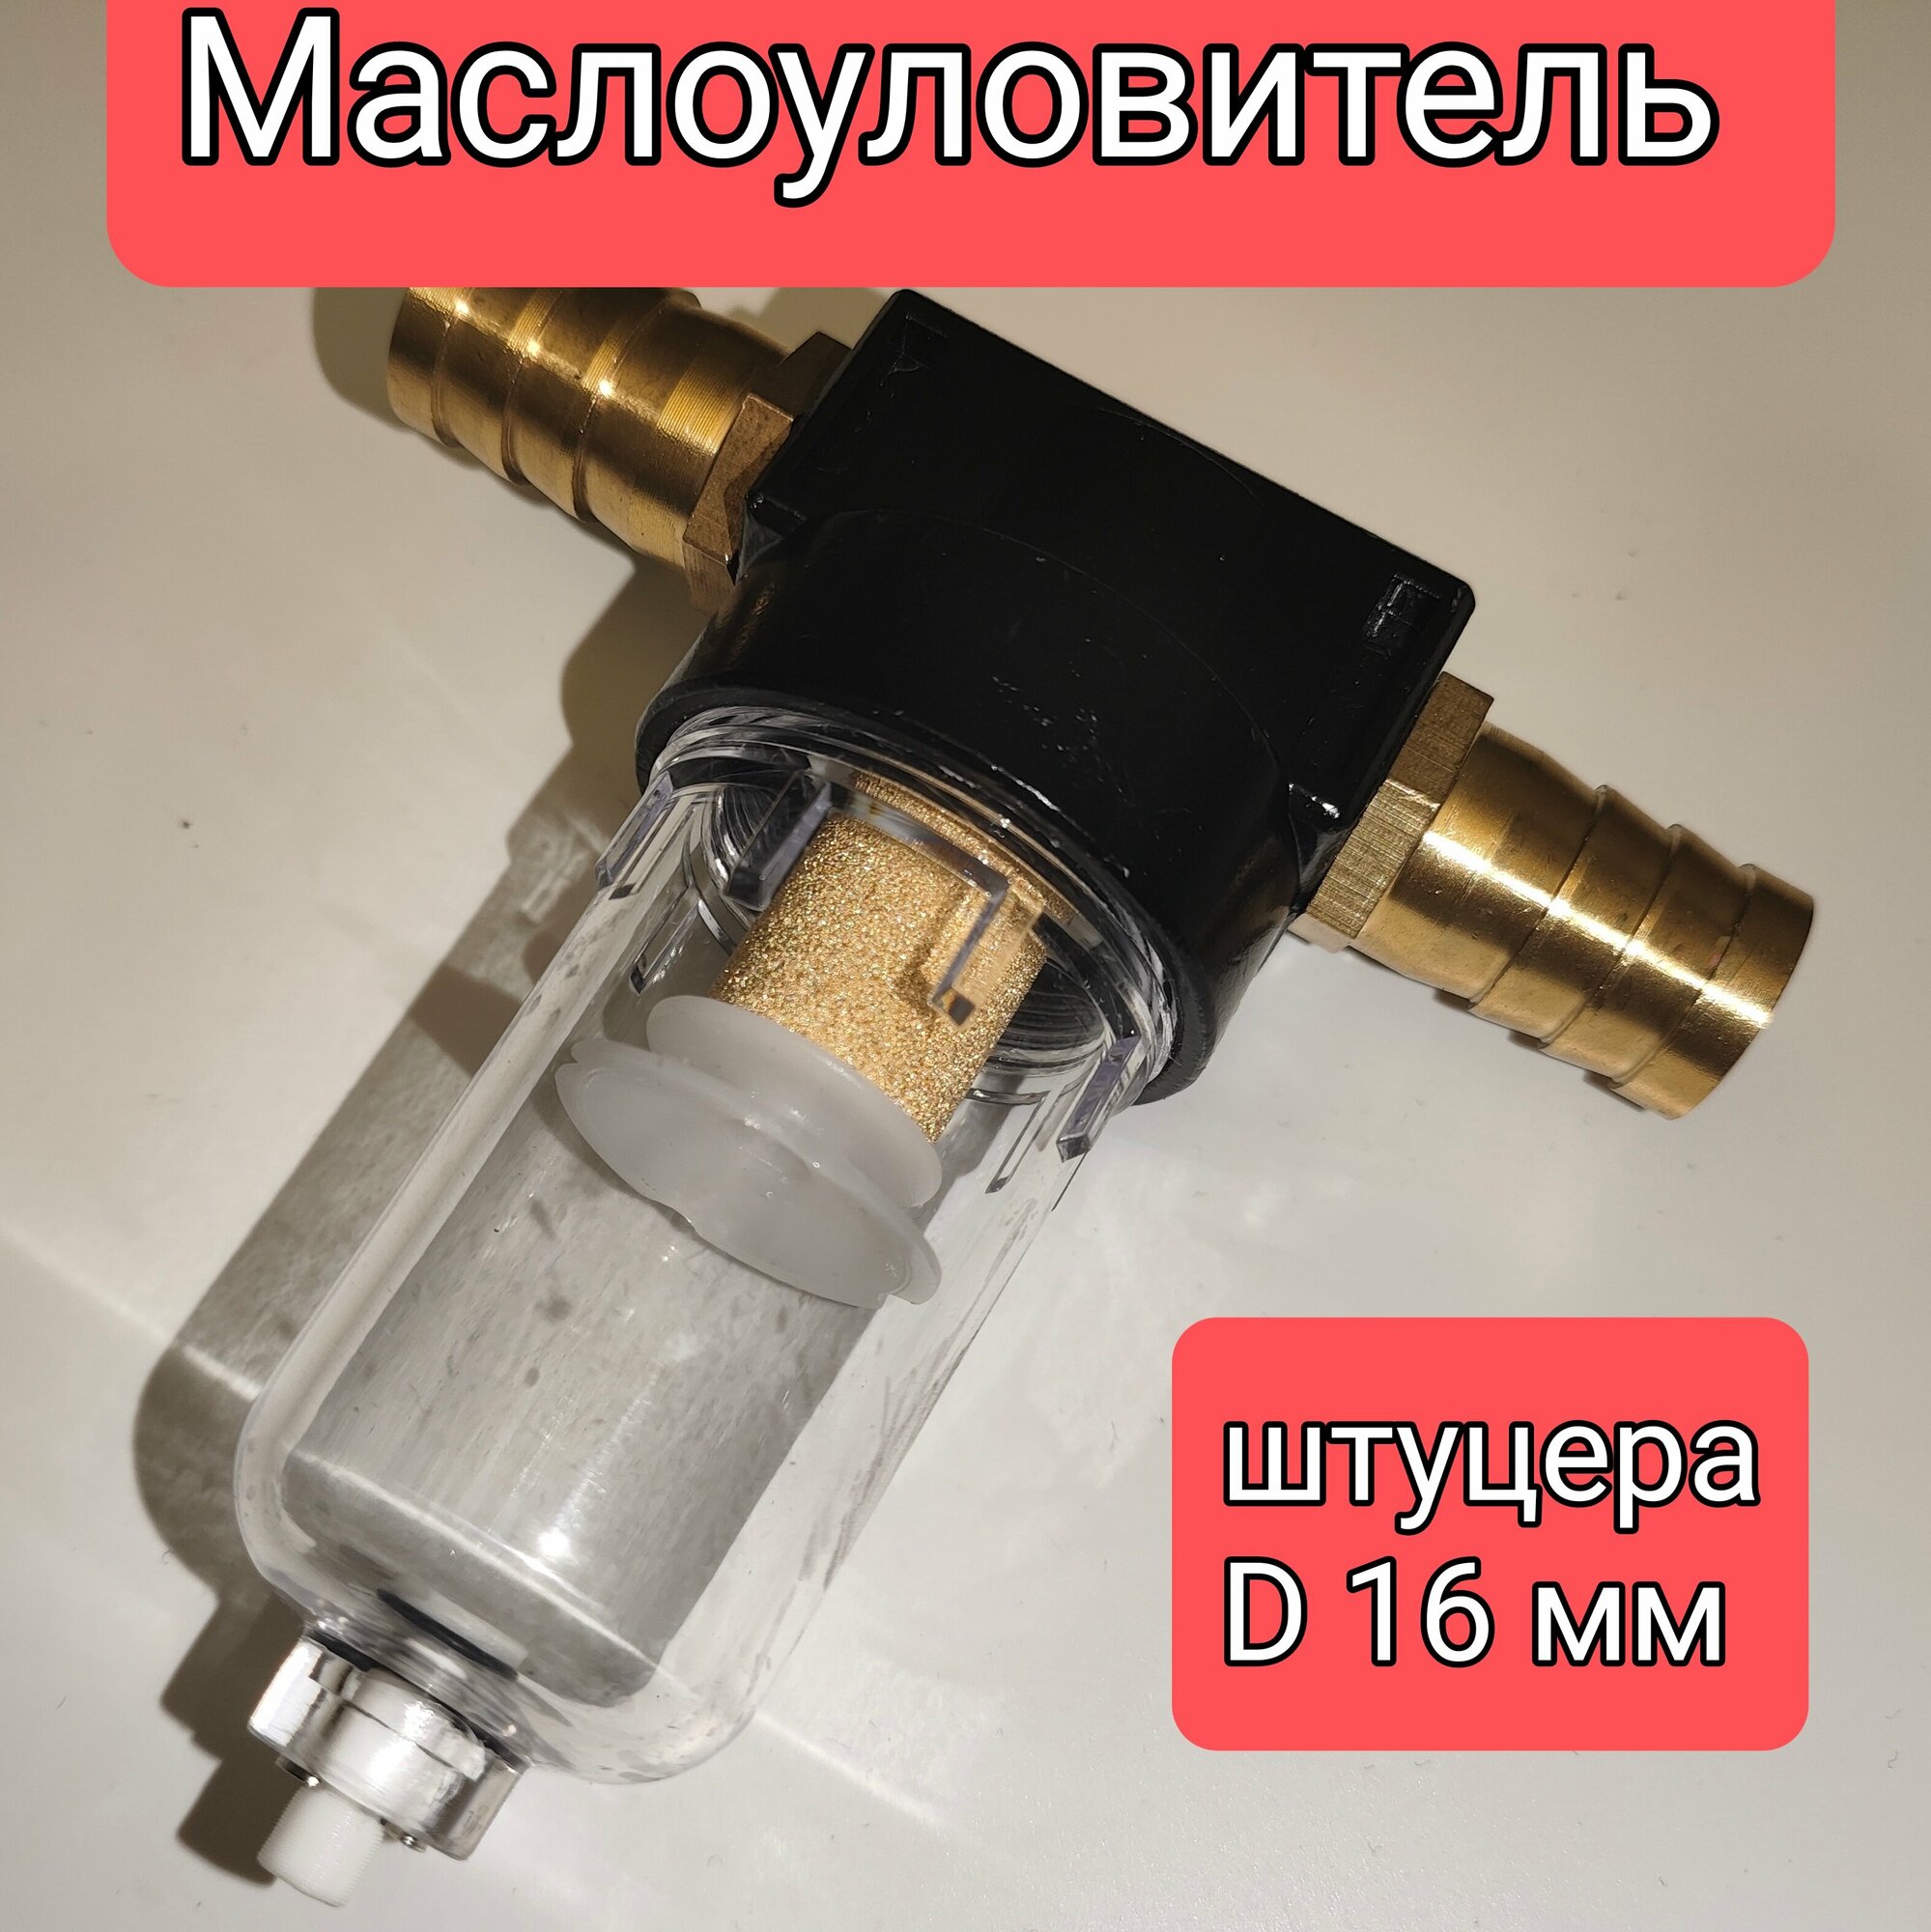 Маслоуловитель, фильтр картерных газов DAP, штуцера 16 мм.